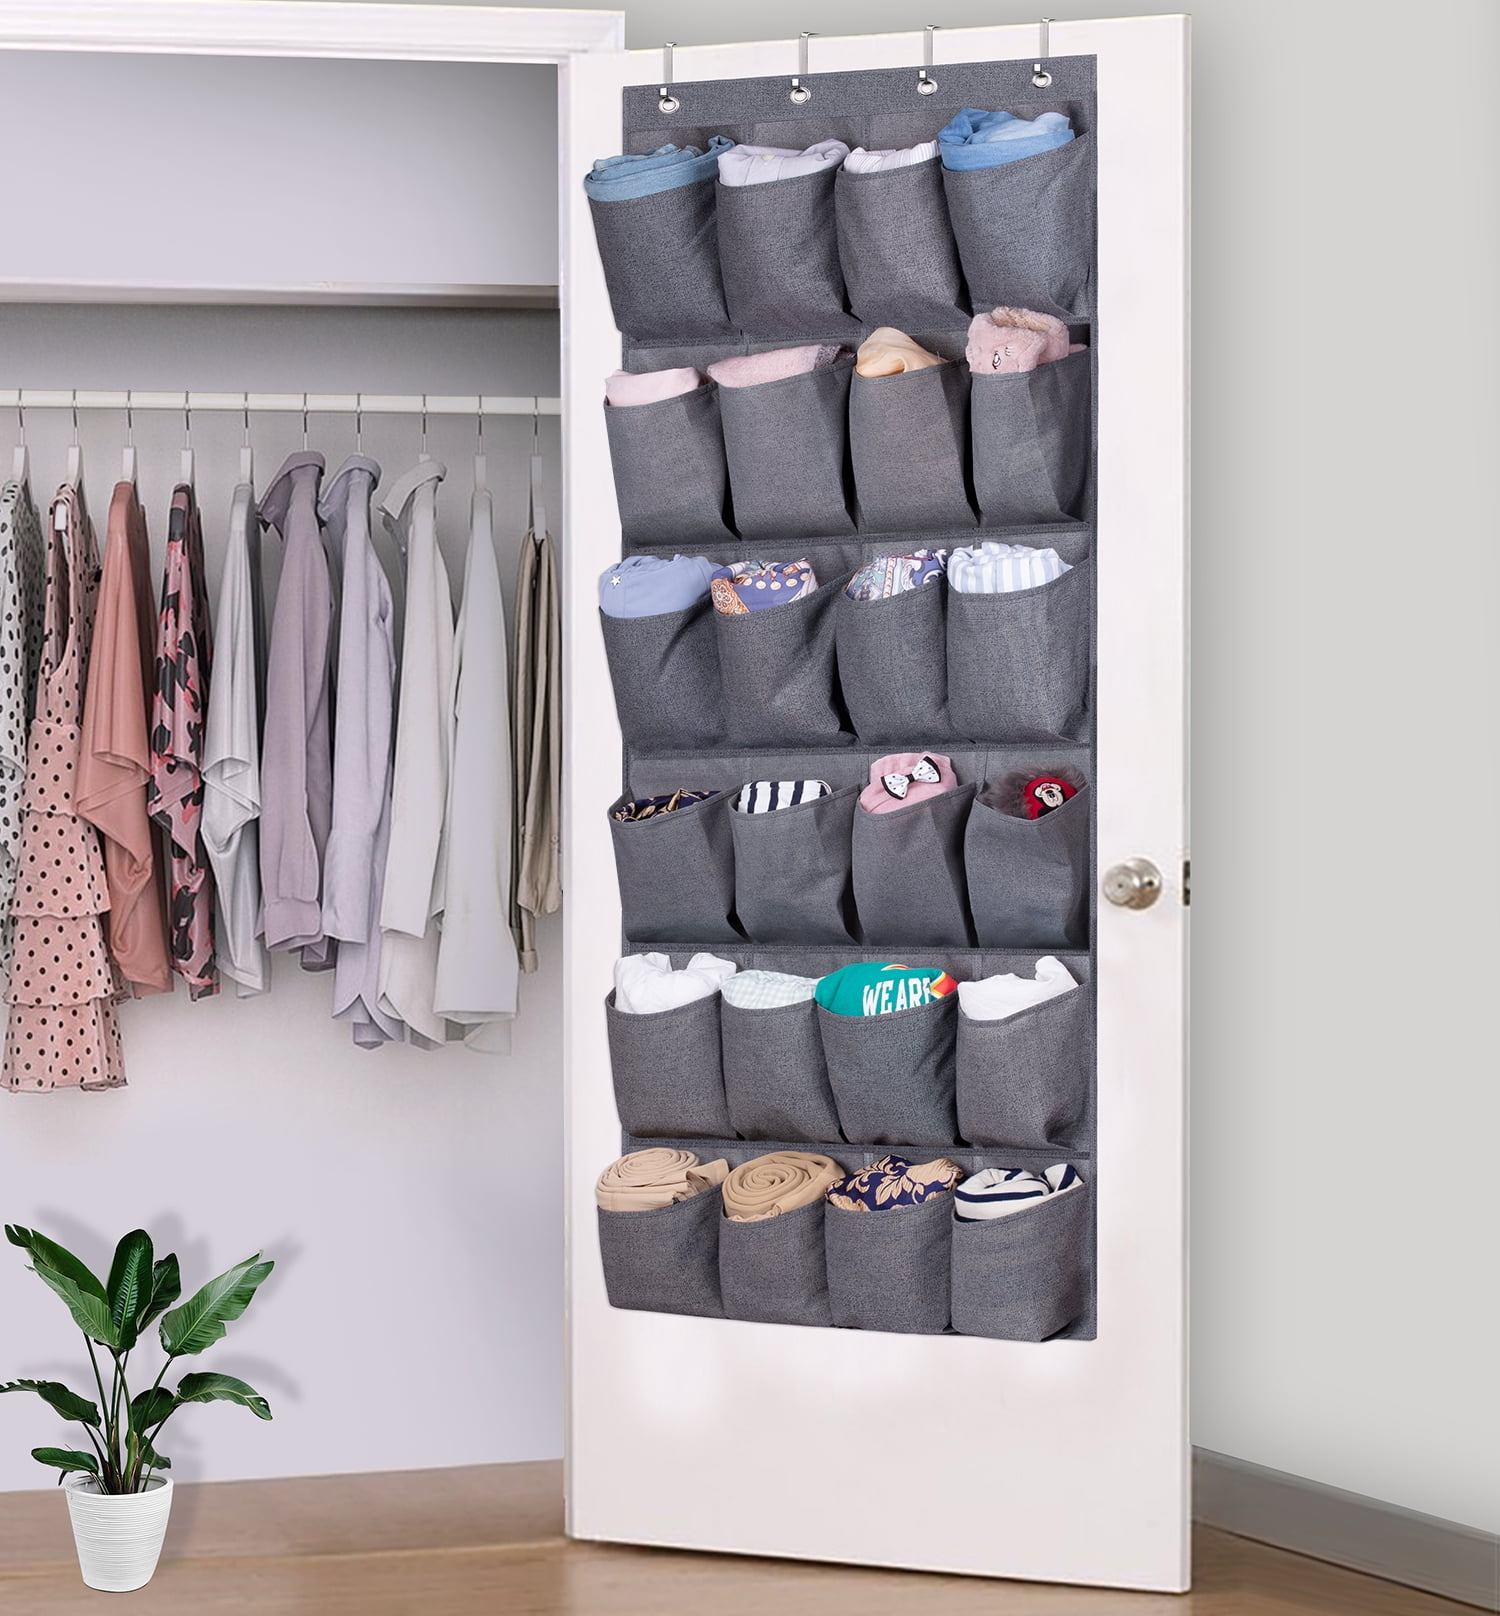 MISSLO Door Shoe Rack with Deep Pockets for 12 Pairs of Shoe Organizer Over  the Door Hanger for Closet and Dorm Narrow Storage, Grey